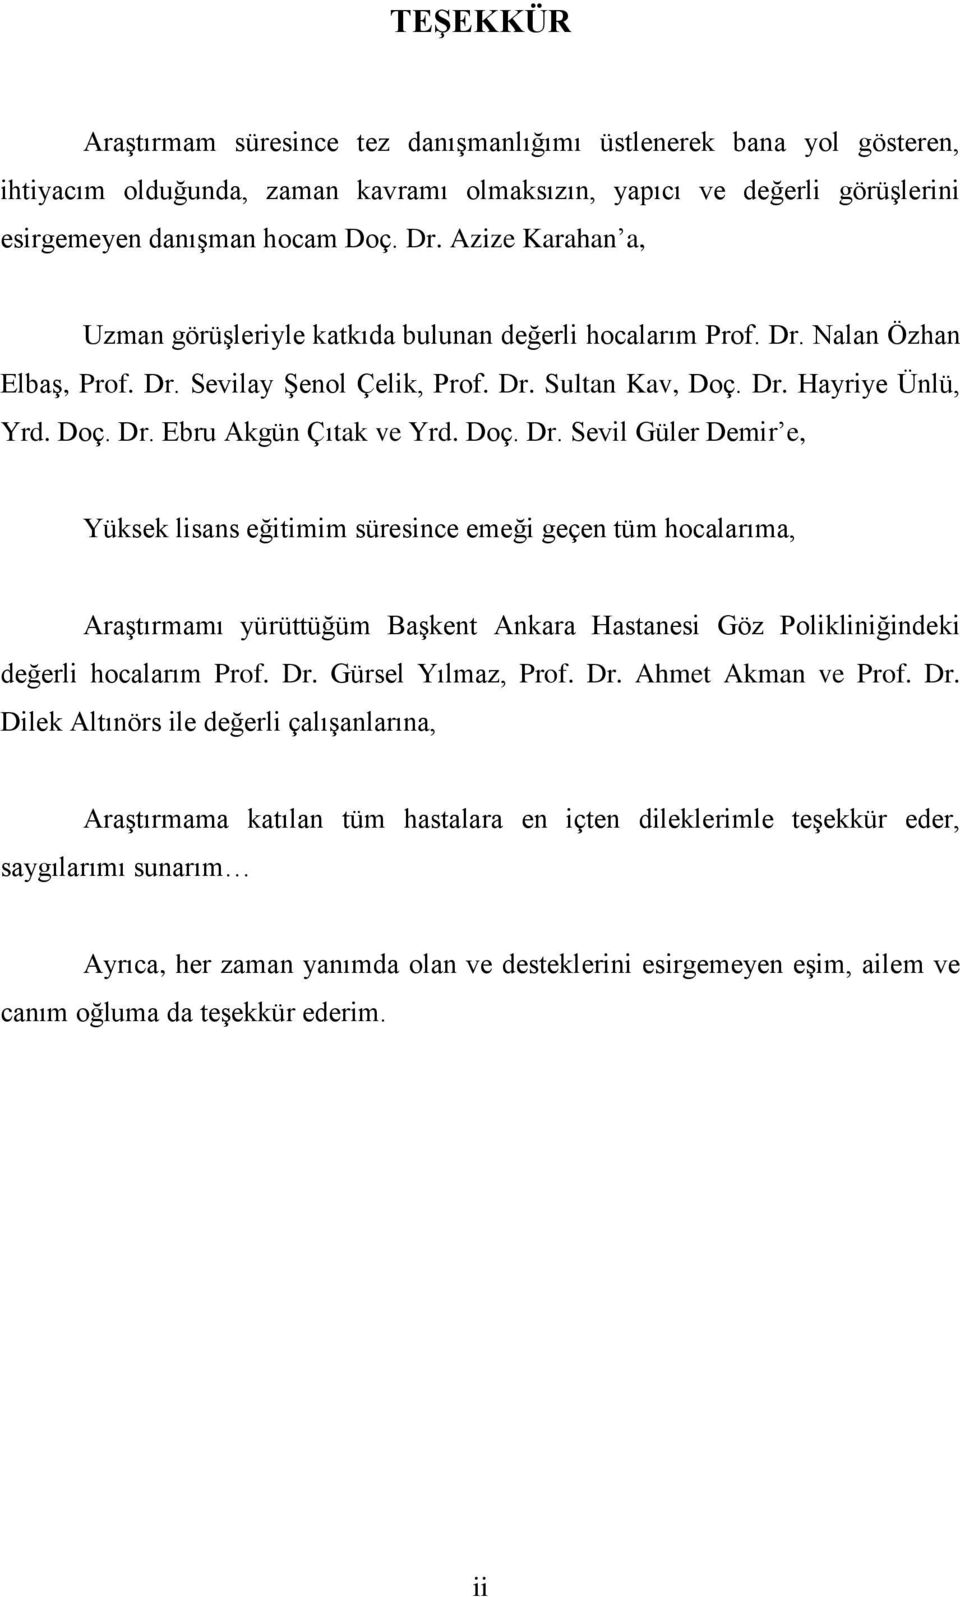 Doç. Dr. Sevil Güler Demir e, Yüksek lisans eğitimim süresince emeği geçen tüm hocalarıma, Araştırmamı yürüttüğüm Başkent Ankara Hastanesi Göz Polikliniğindeki değerli hocalarım Prof. Dr. Gürsel Yılmaz, Prof.